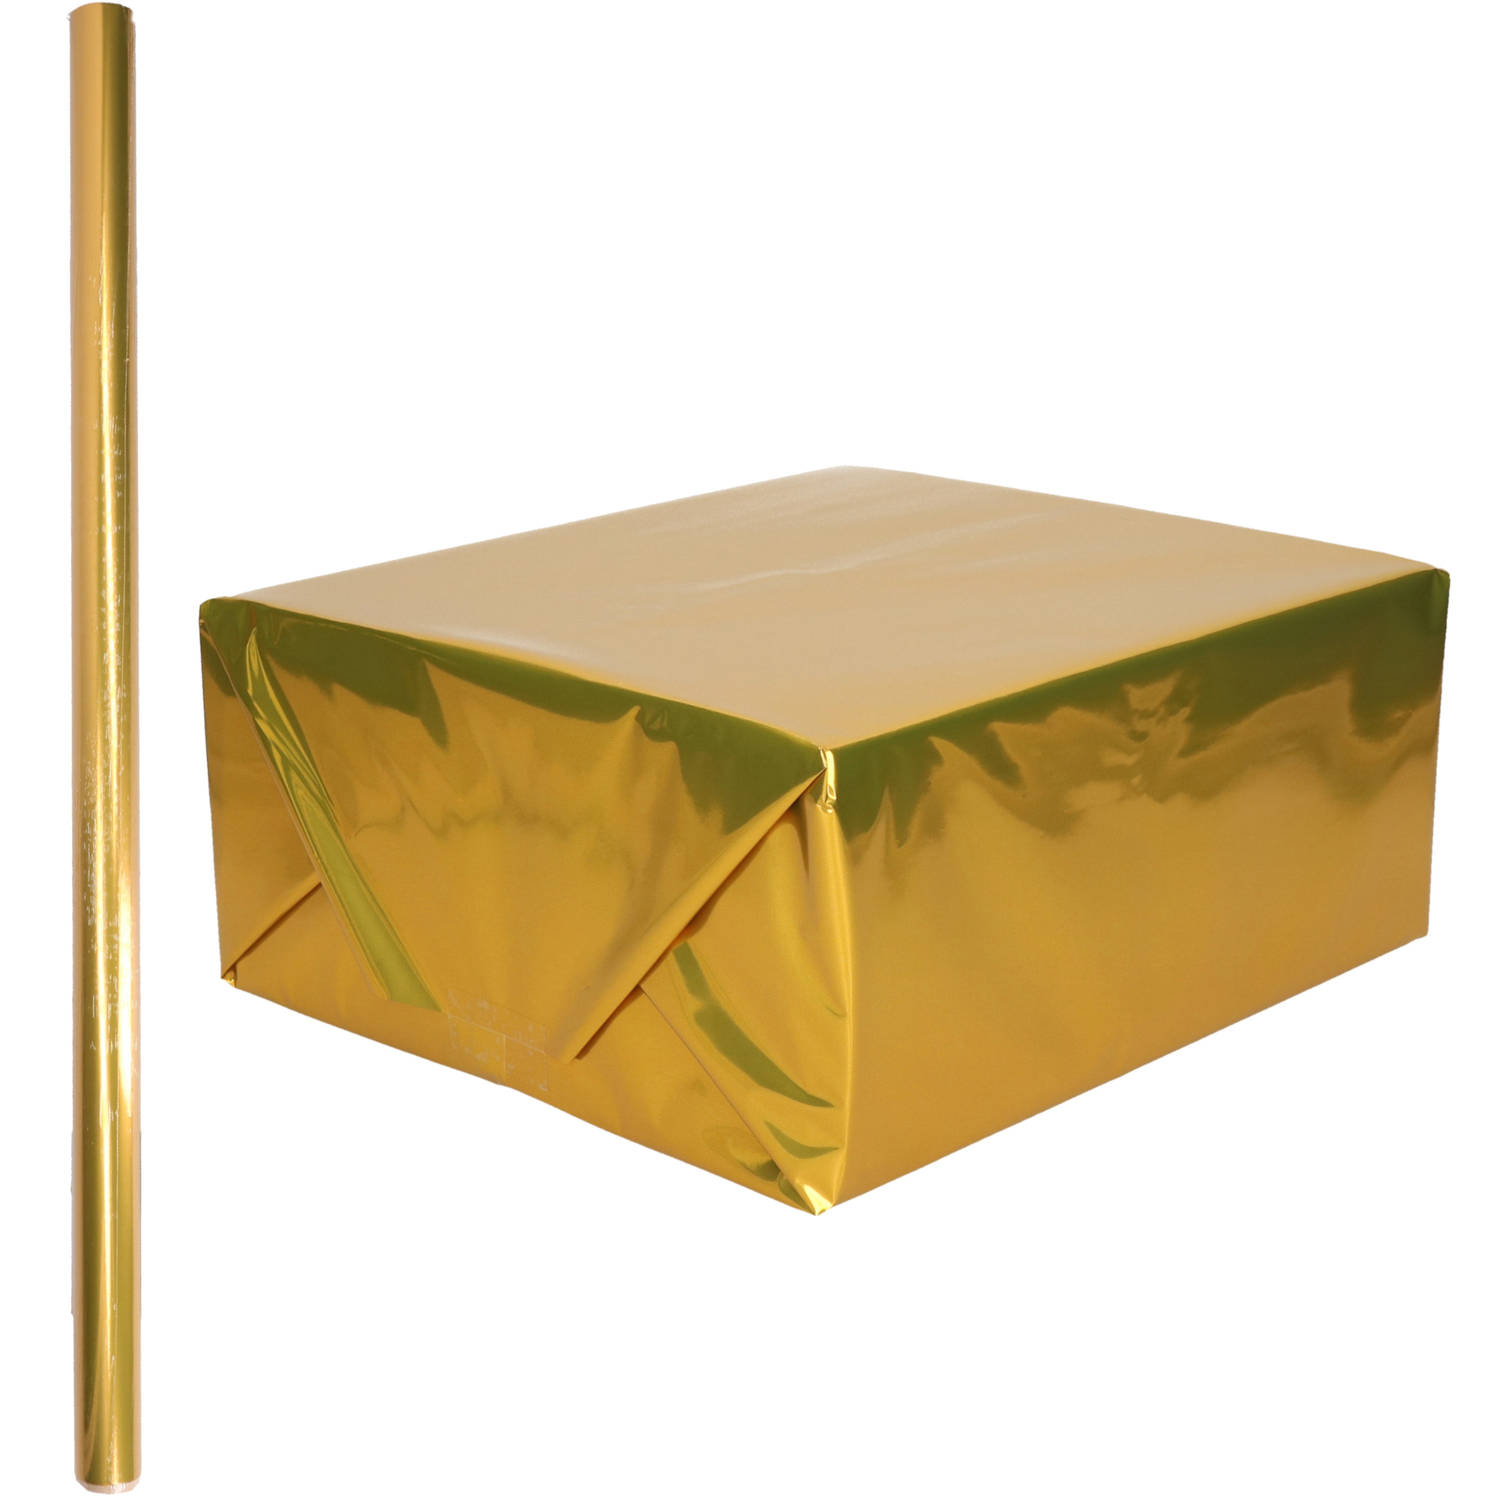 1x Rollen inpakpapier / cadeaufolie metallic goud 200 x 70 cm - kadofolie / cadeaupapier